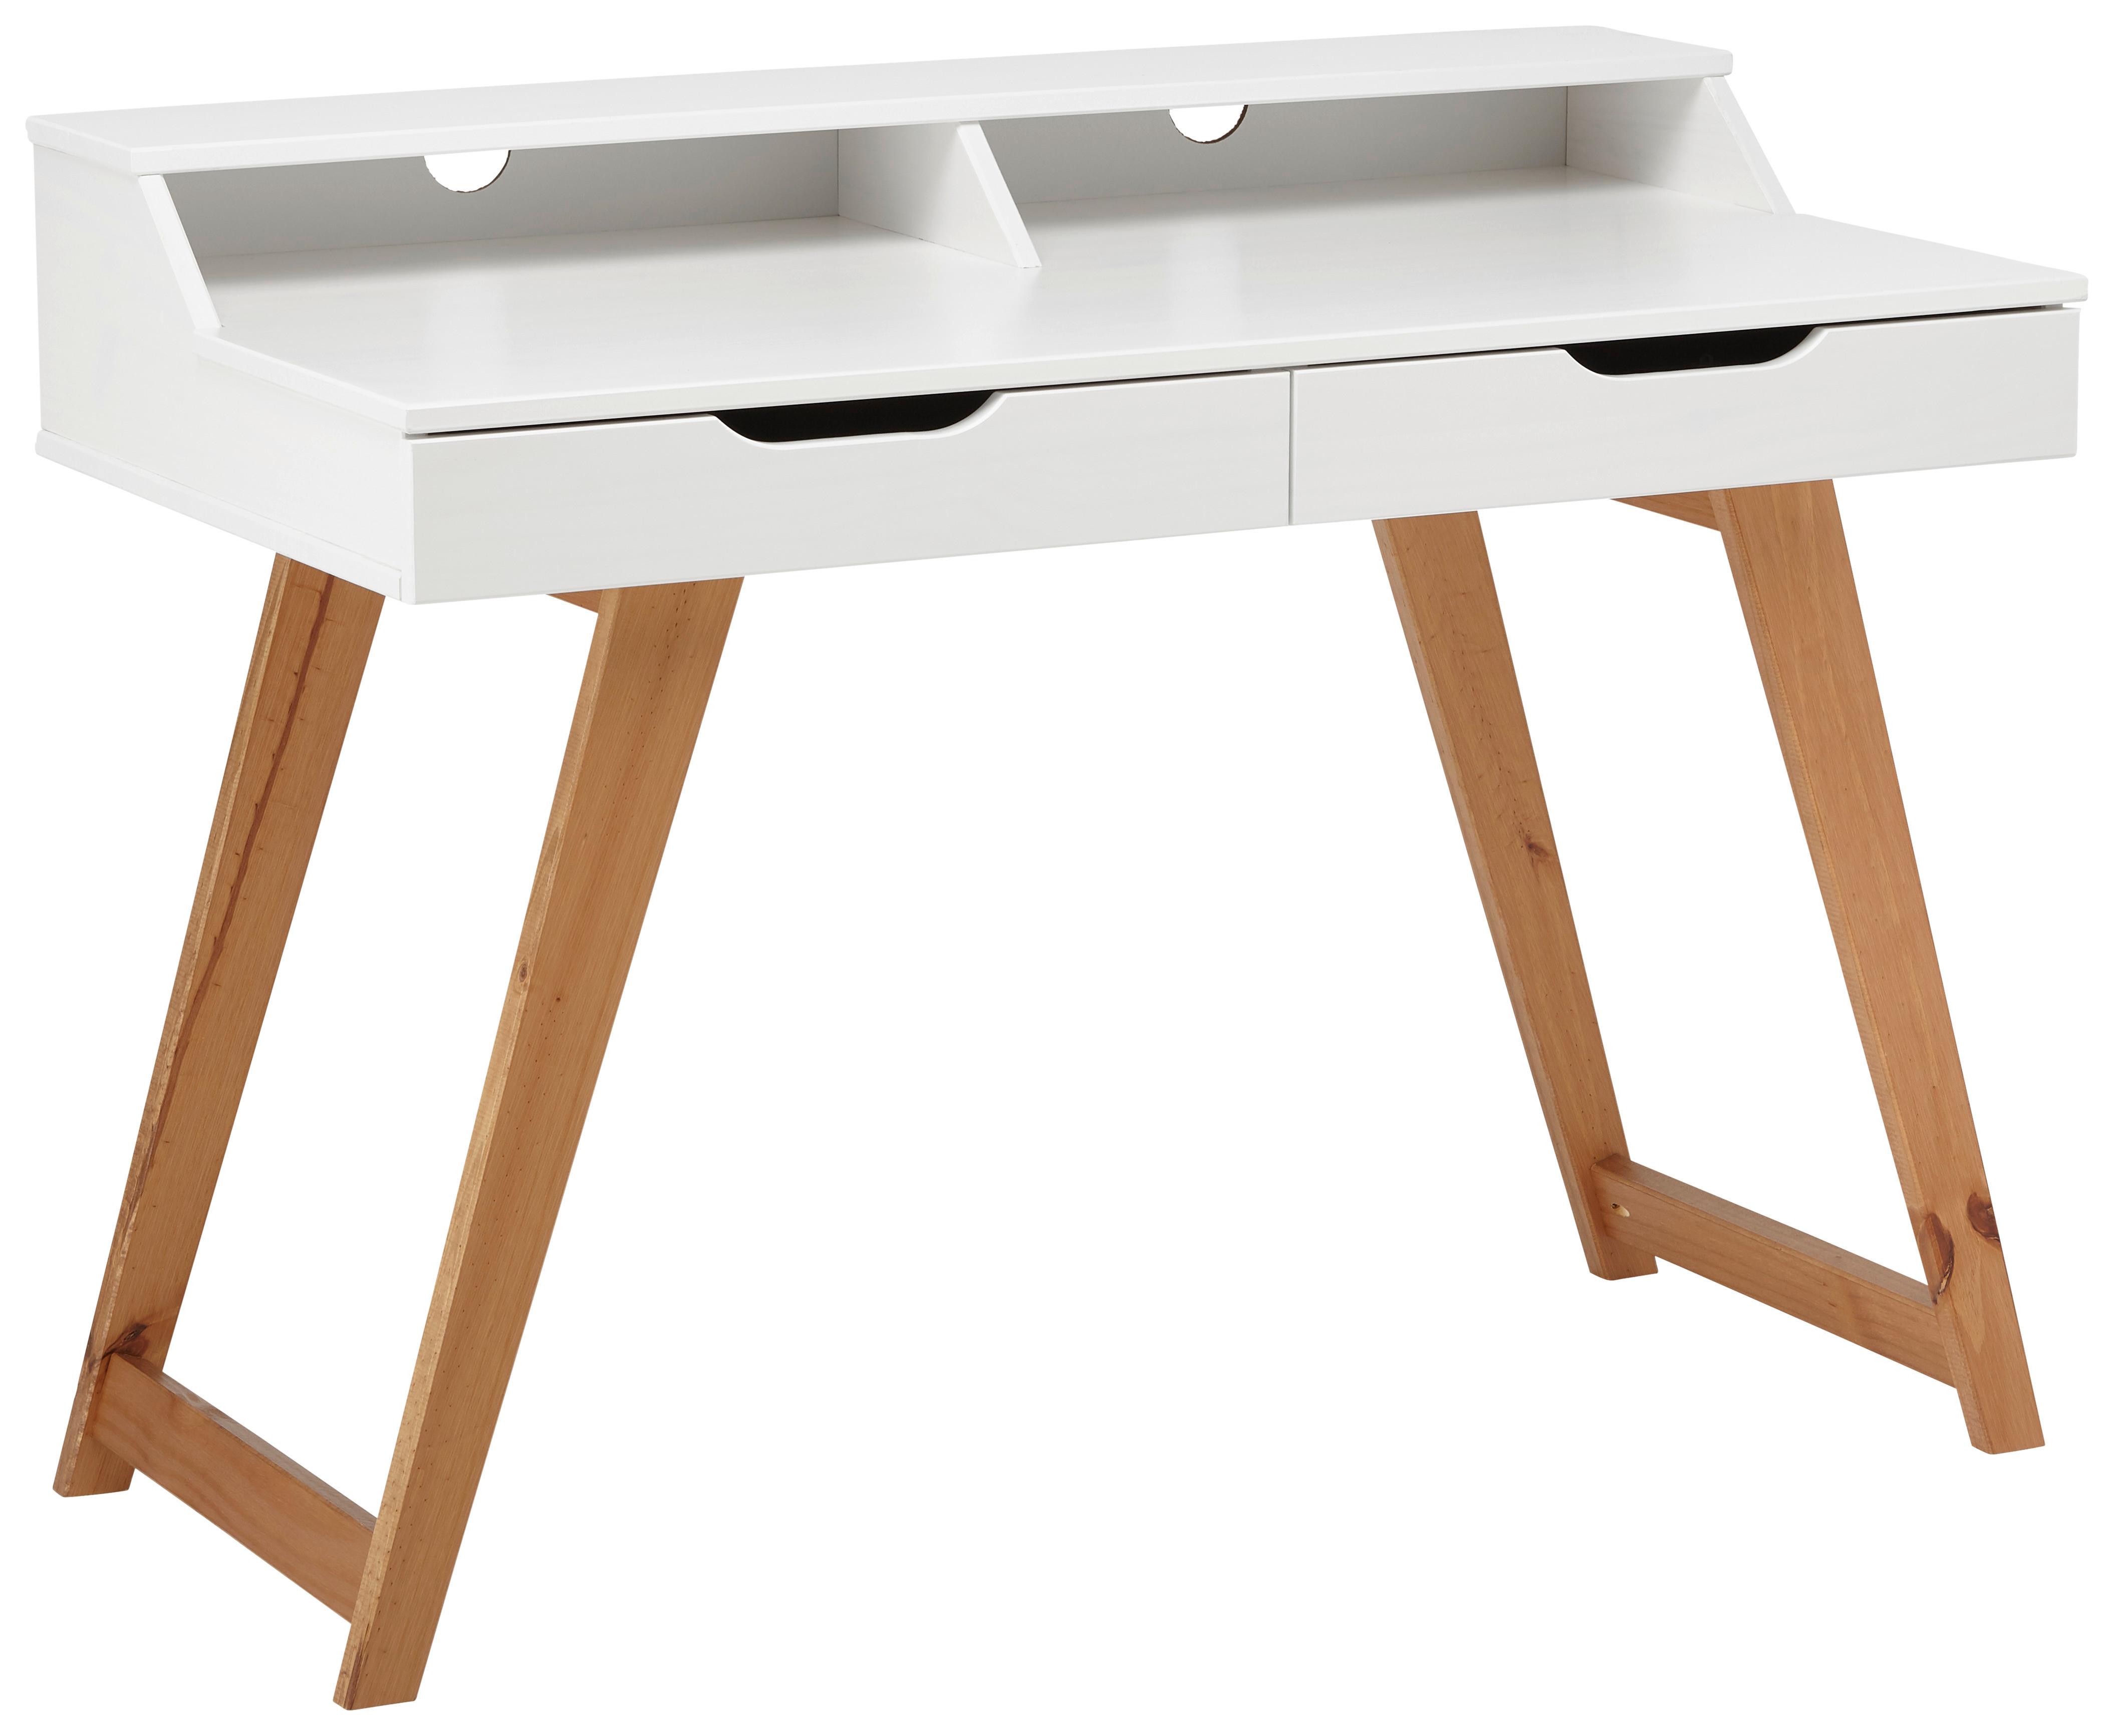 Schreibtisch in Weiss/Walnuss - Weiss/Walnussfarben, Design, Holz/Holzwerkstoff (110/85/58cm) - Modern Living